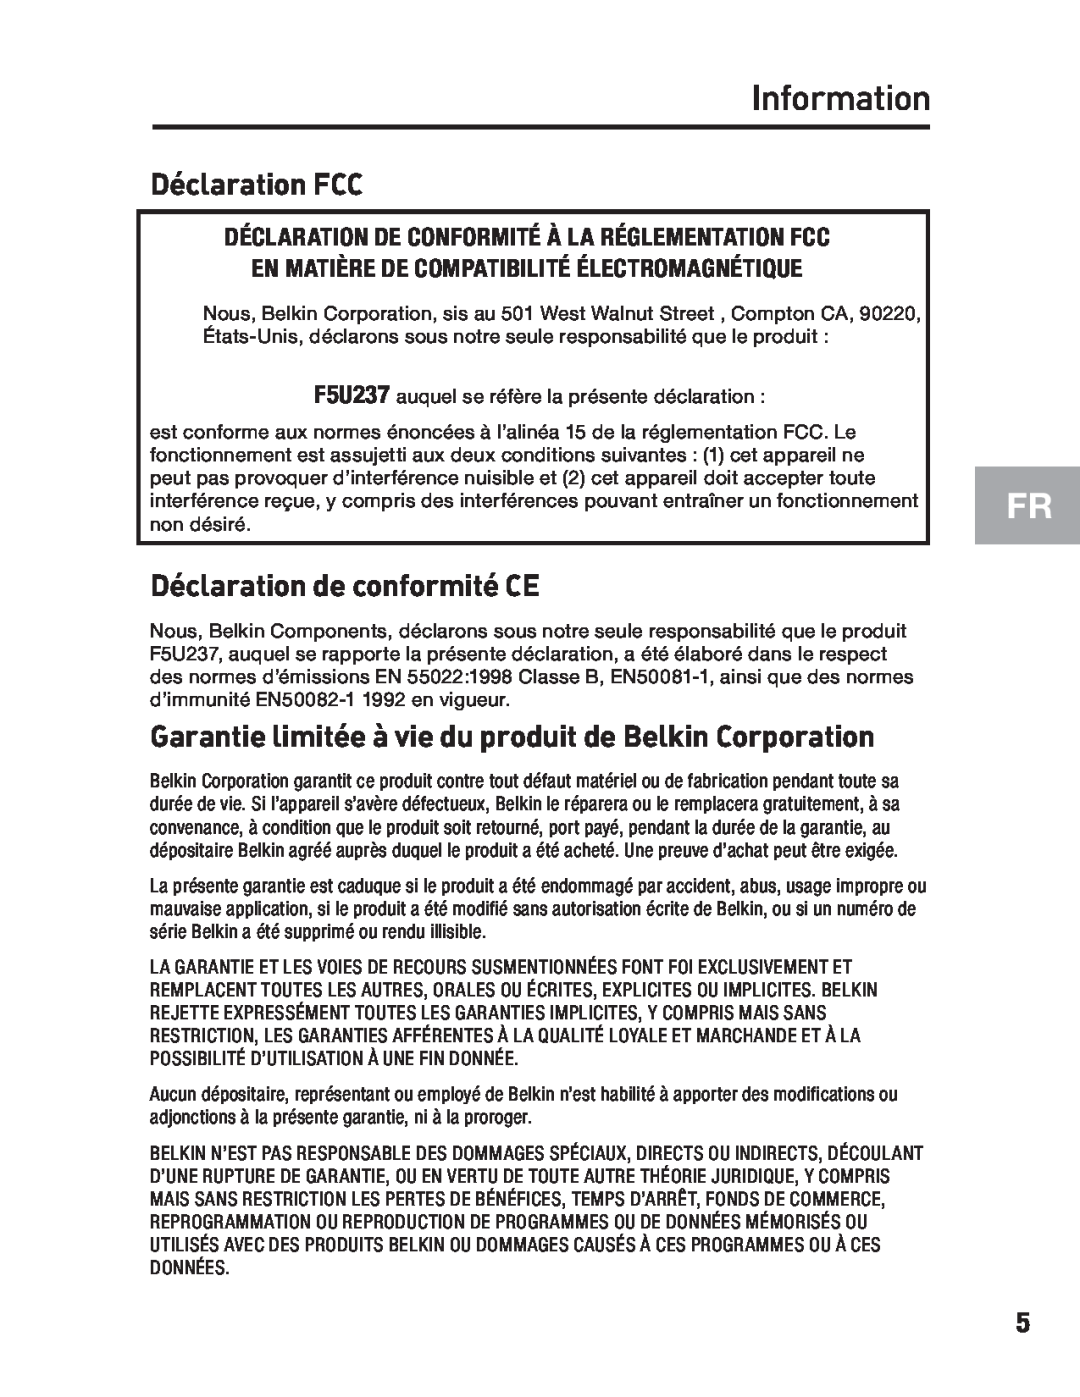 Belkin F5U237 Déclaration FCC, Déclaration de conformité CE, Garantie limitée à vie du produit de Belkin Corporation 